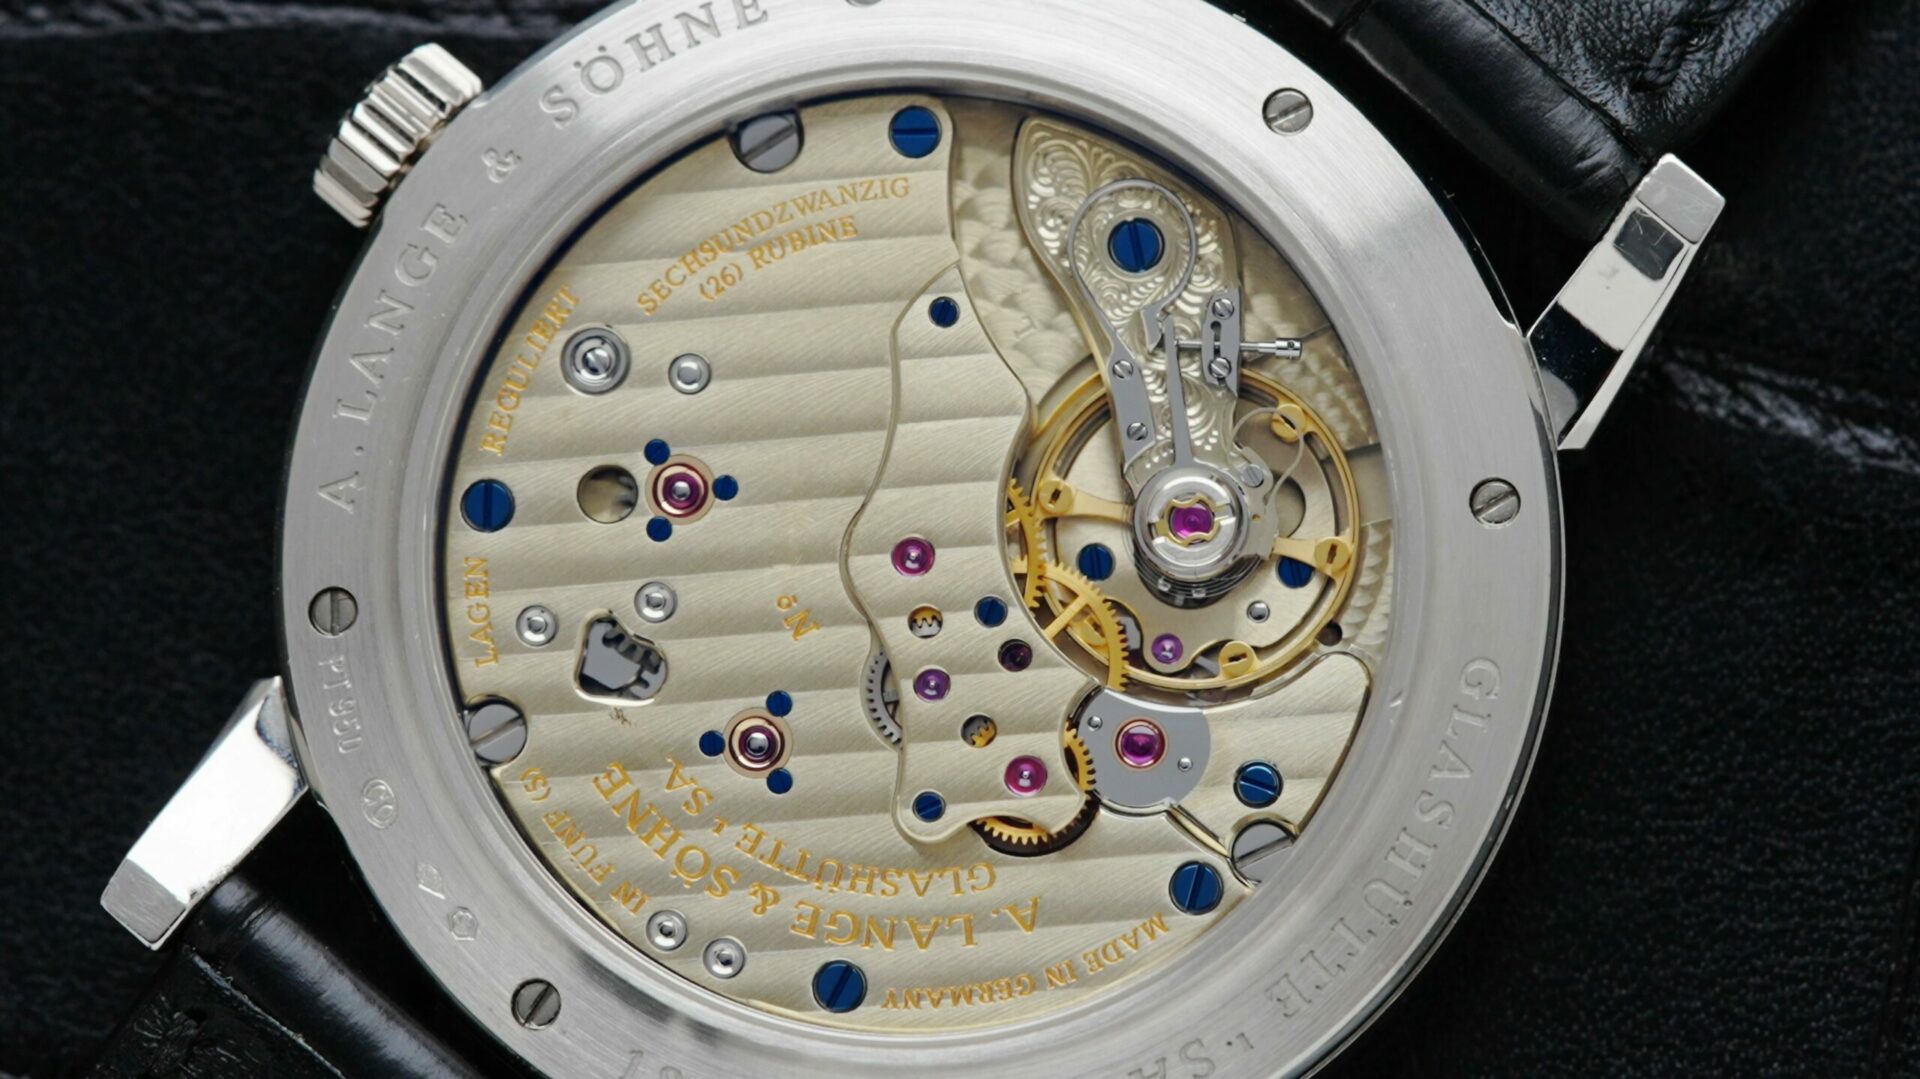 Back side of the A. Lange & Söhne Richard Lange Platinum watch.